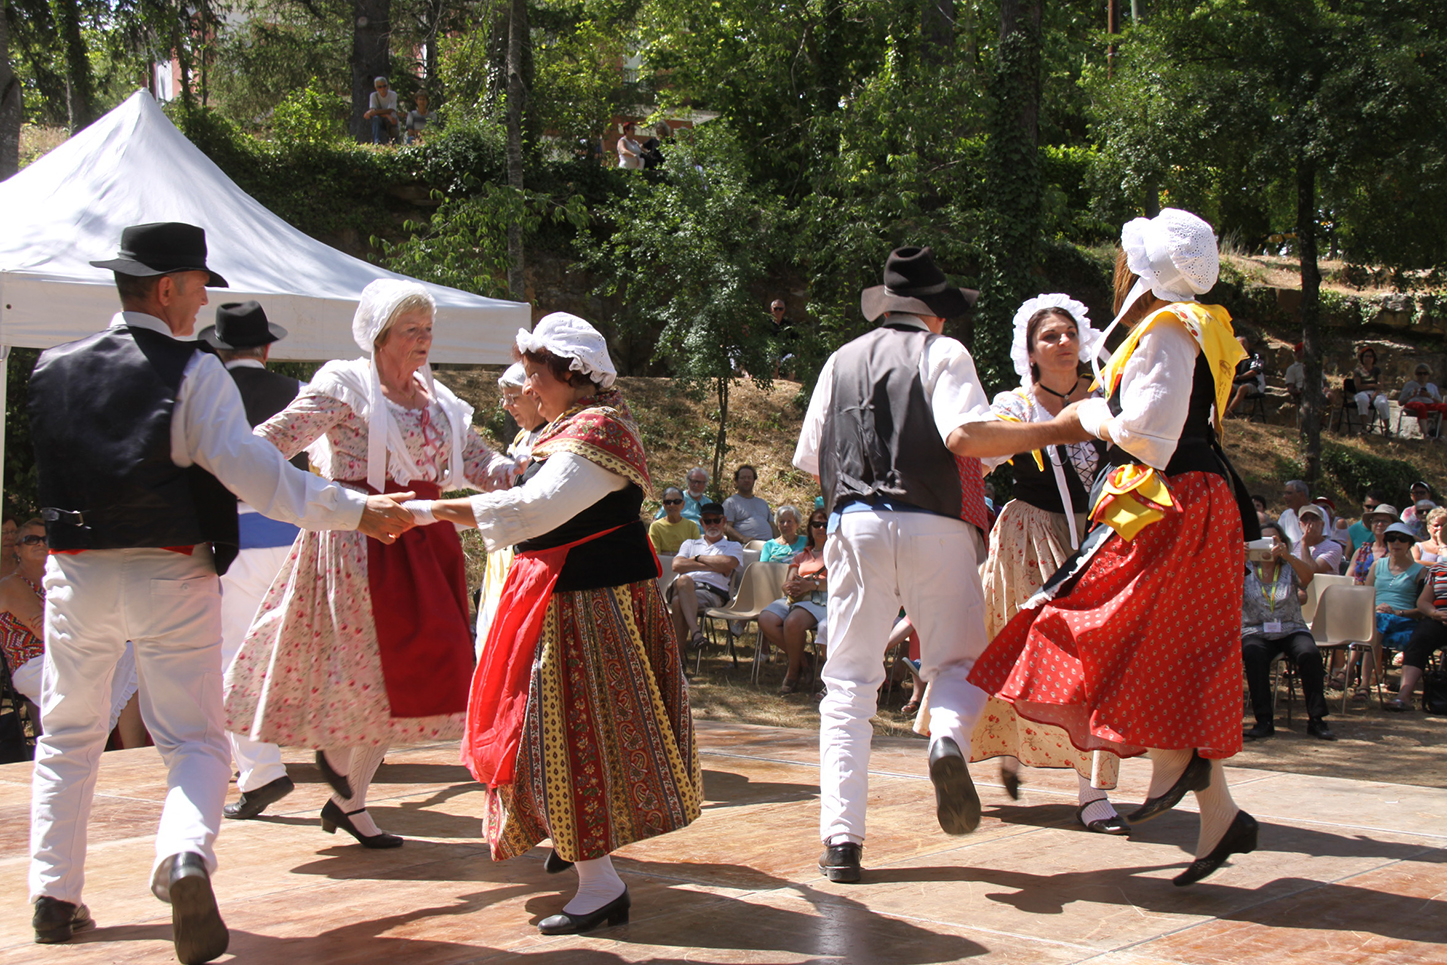 Venez fêter la tradition provençale à Gréoux-les-Bains